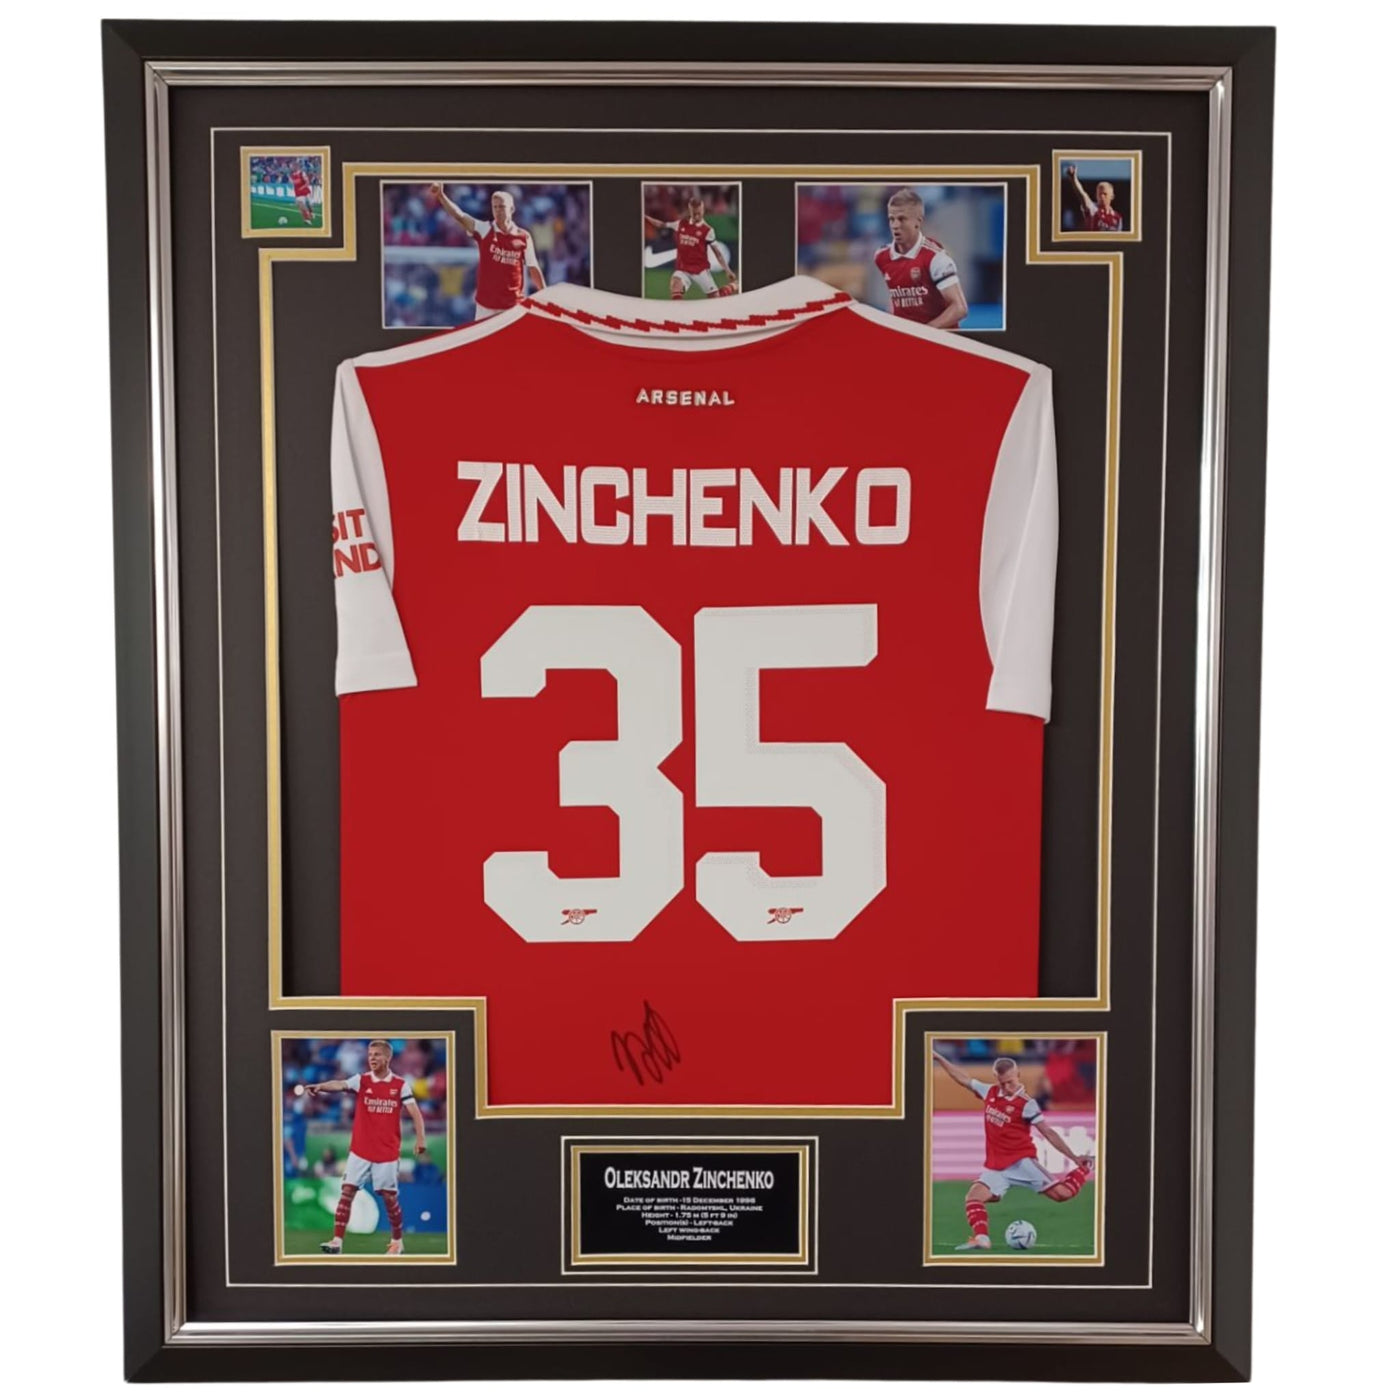 Zinchenko signed shirt